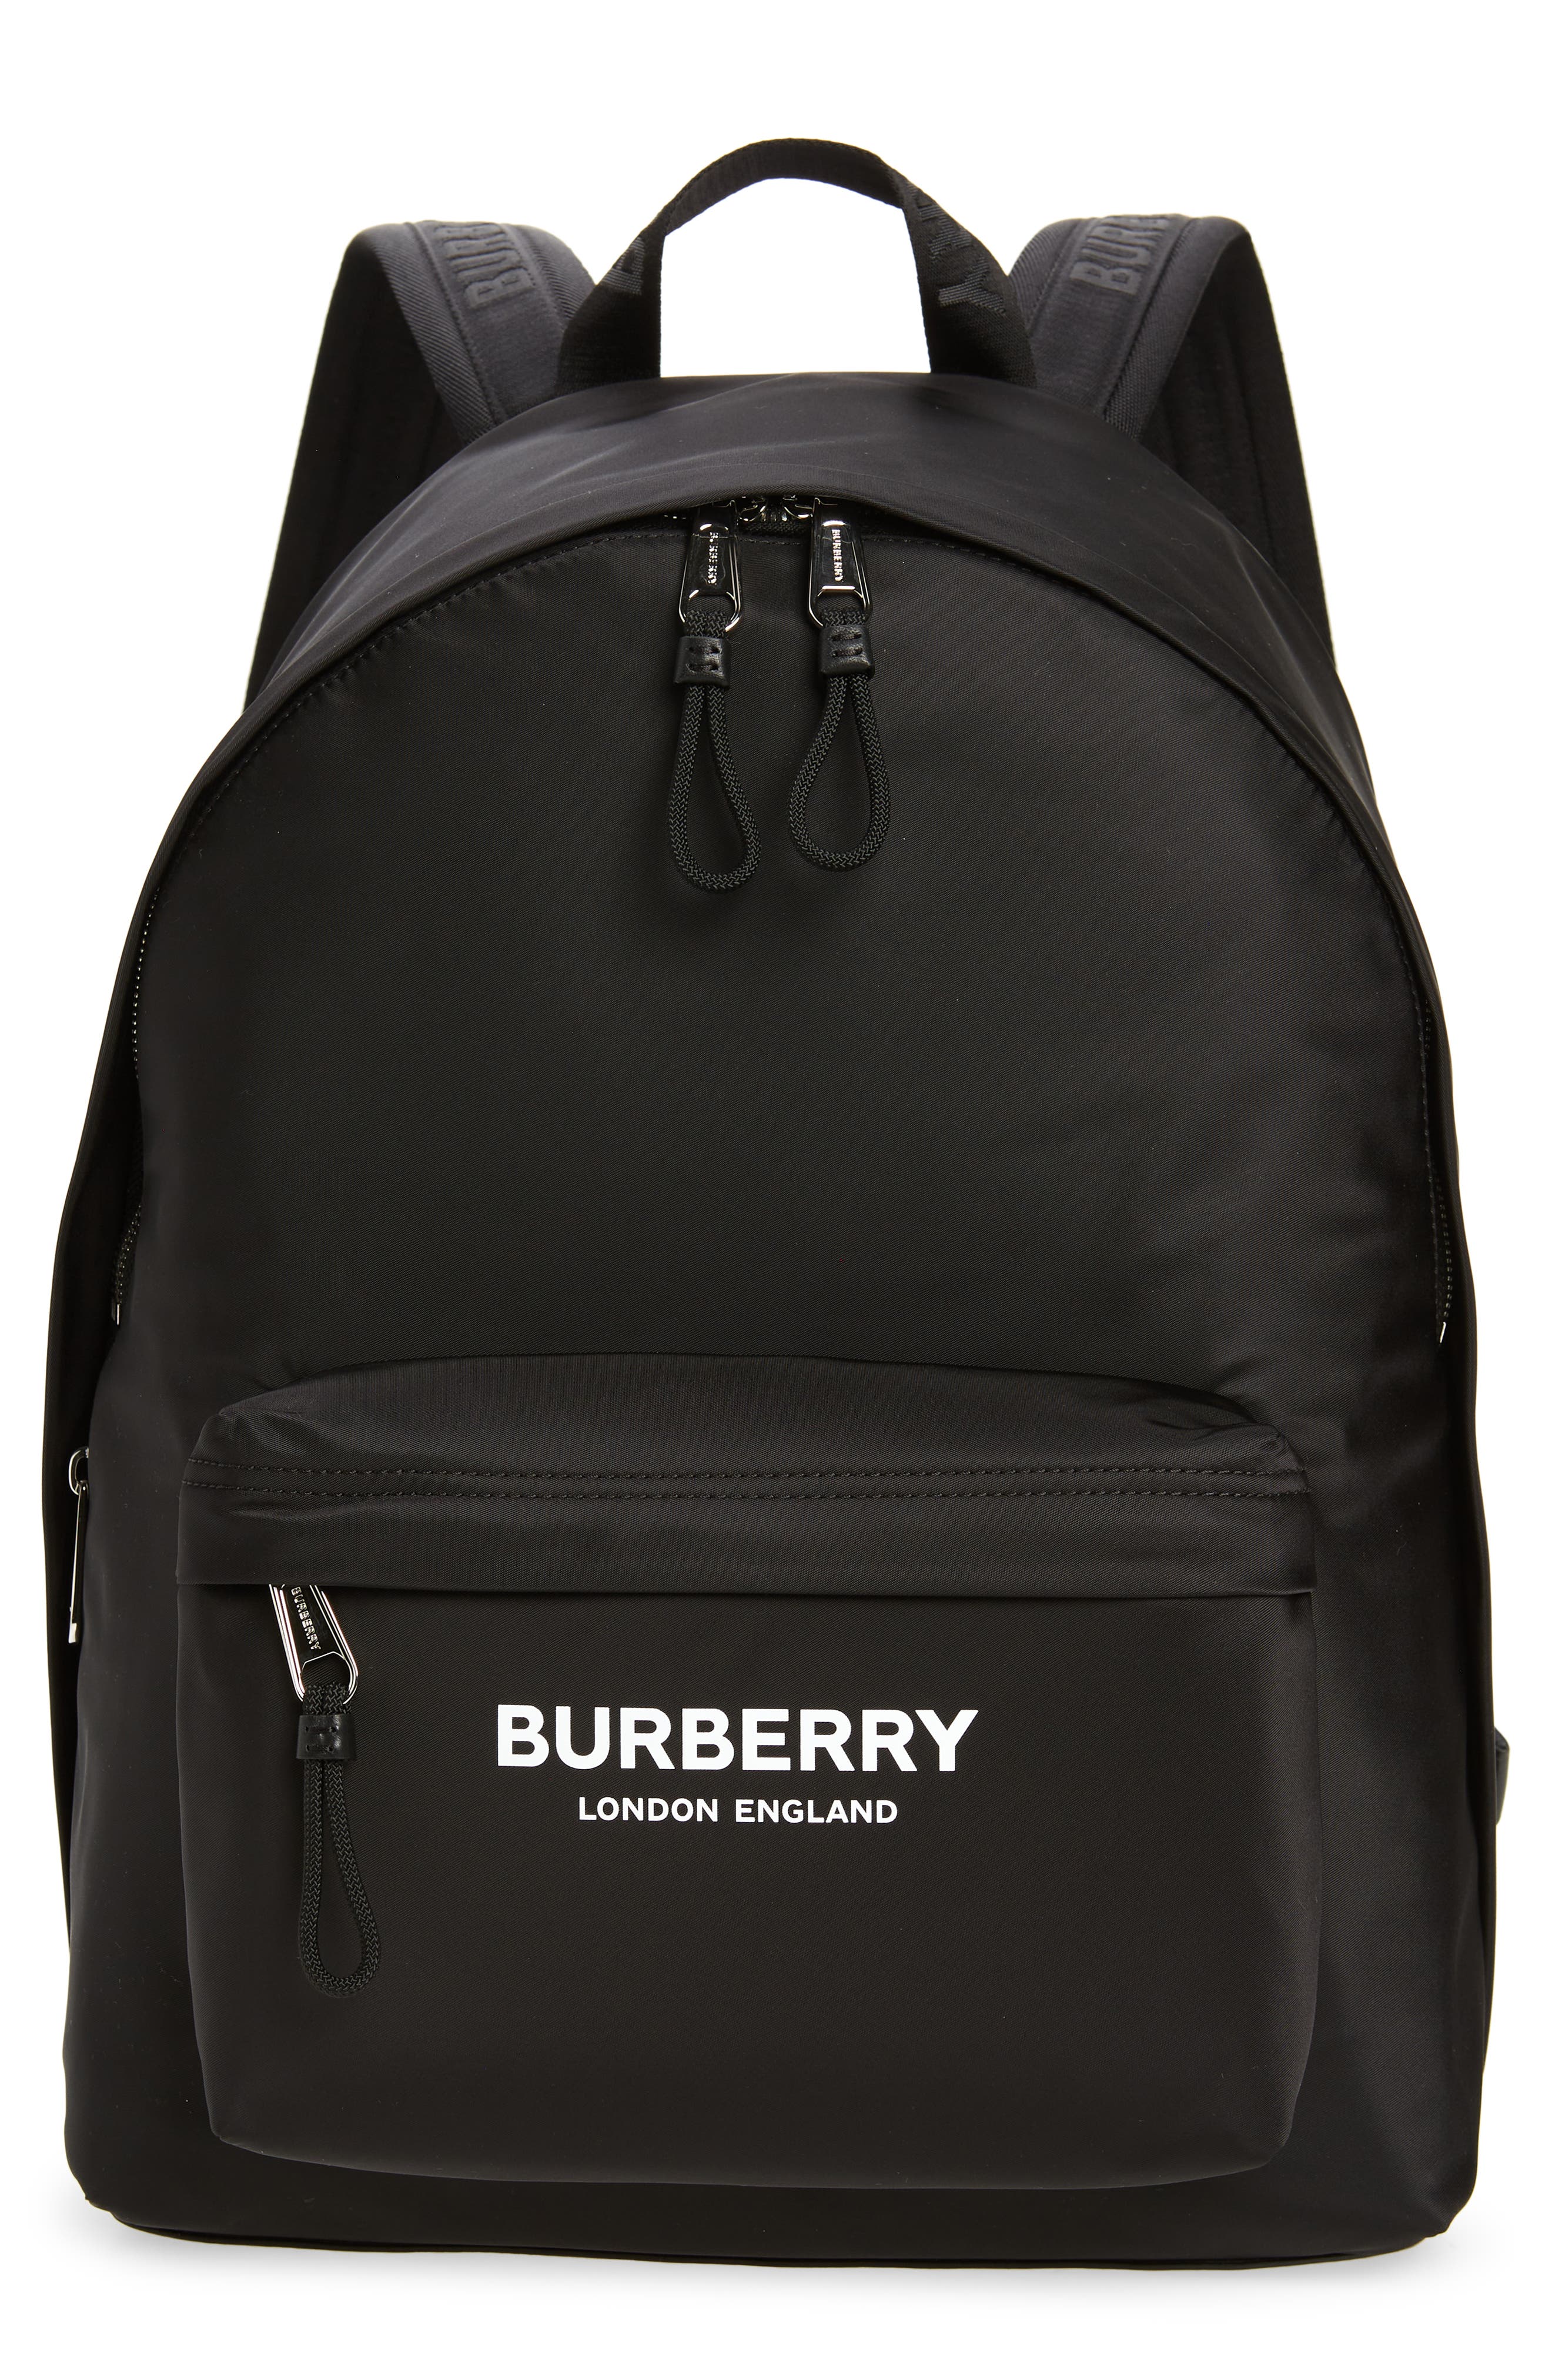 Burberry Jett Logo Nylon Backpack in Black at Nordstrom